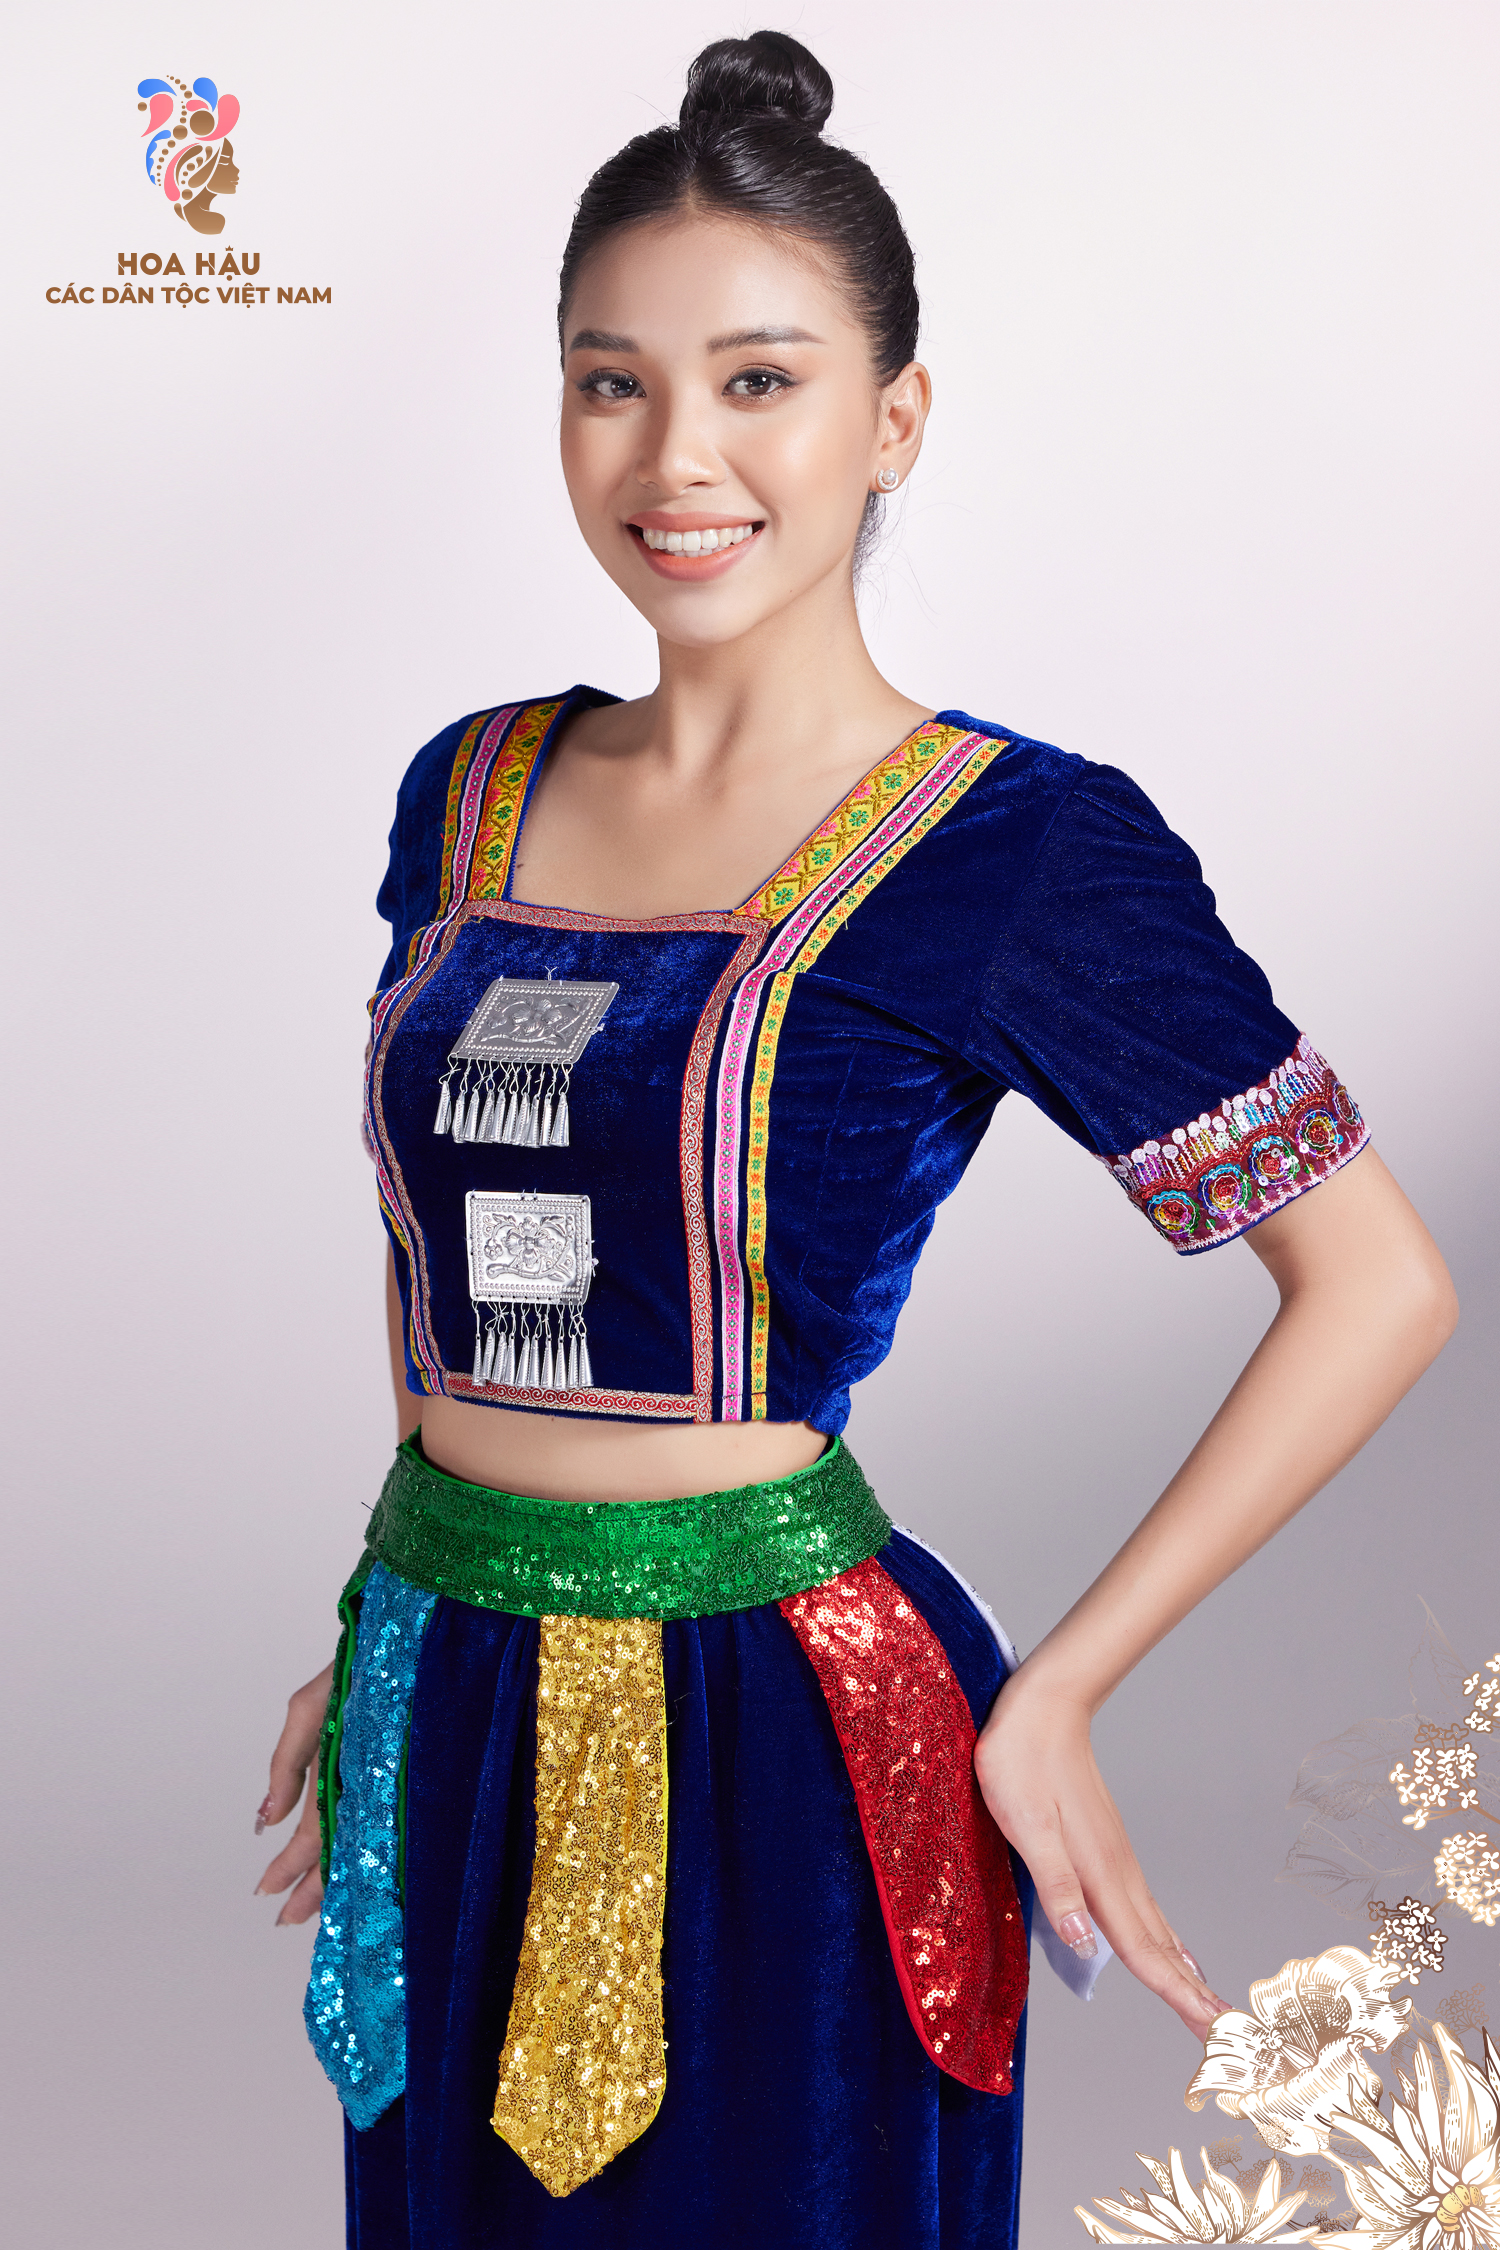 Lộ diện 30 cô gái đẹp nhất Hoa hậu các dân tộc Việt Nam